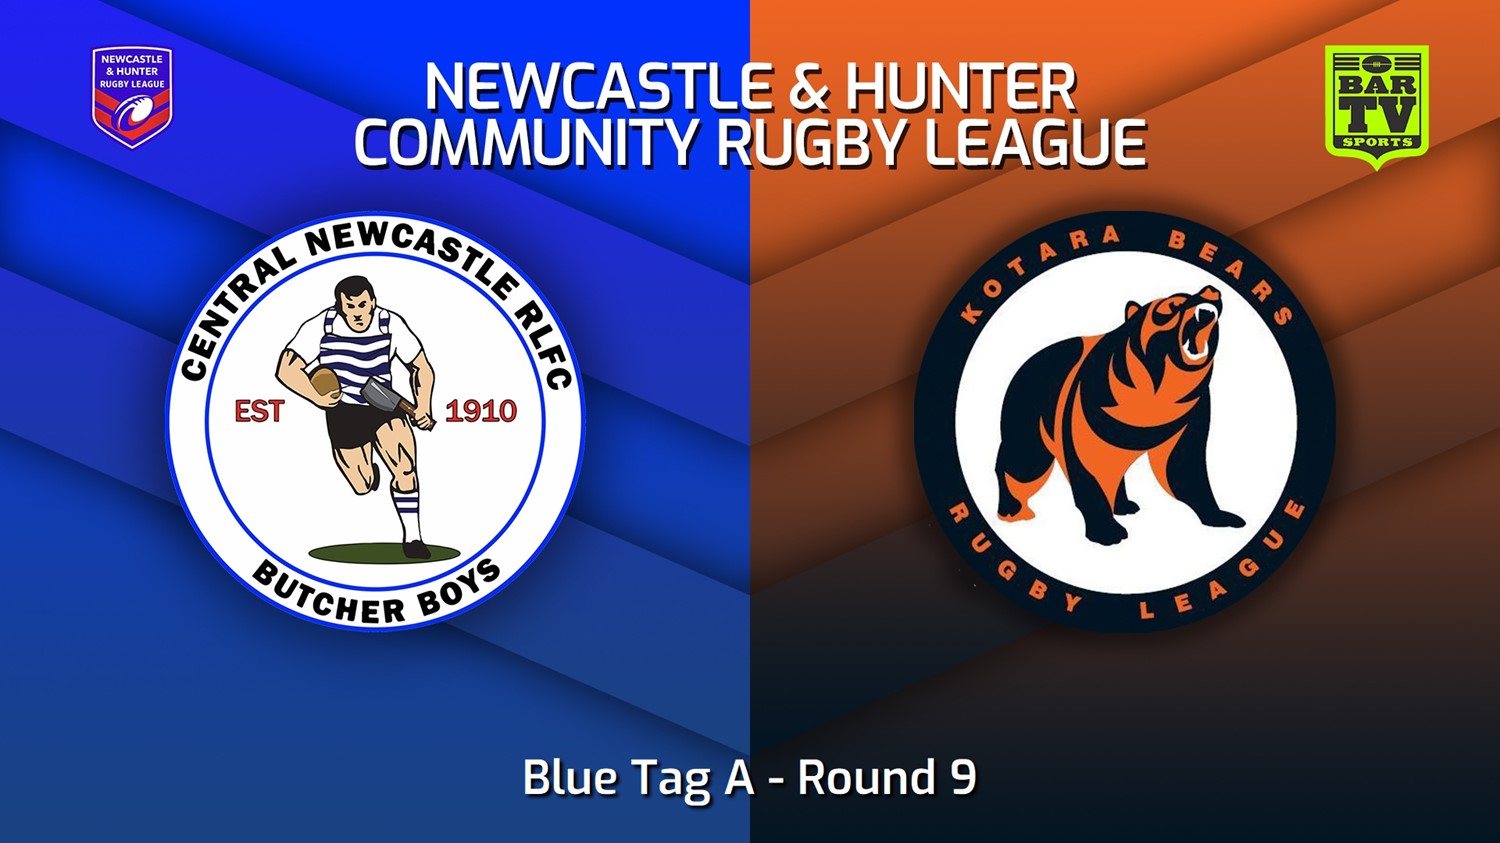 230702-NHRL Round 9 - Blue Tag A - Central Newcastle Butcher Boys v Kotara Bears Slate Image